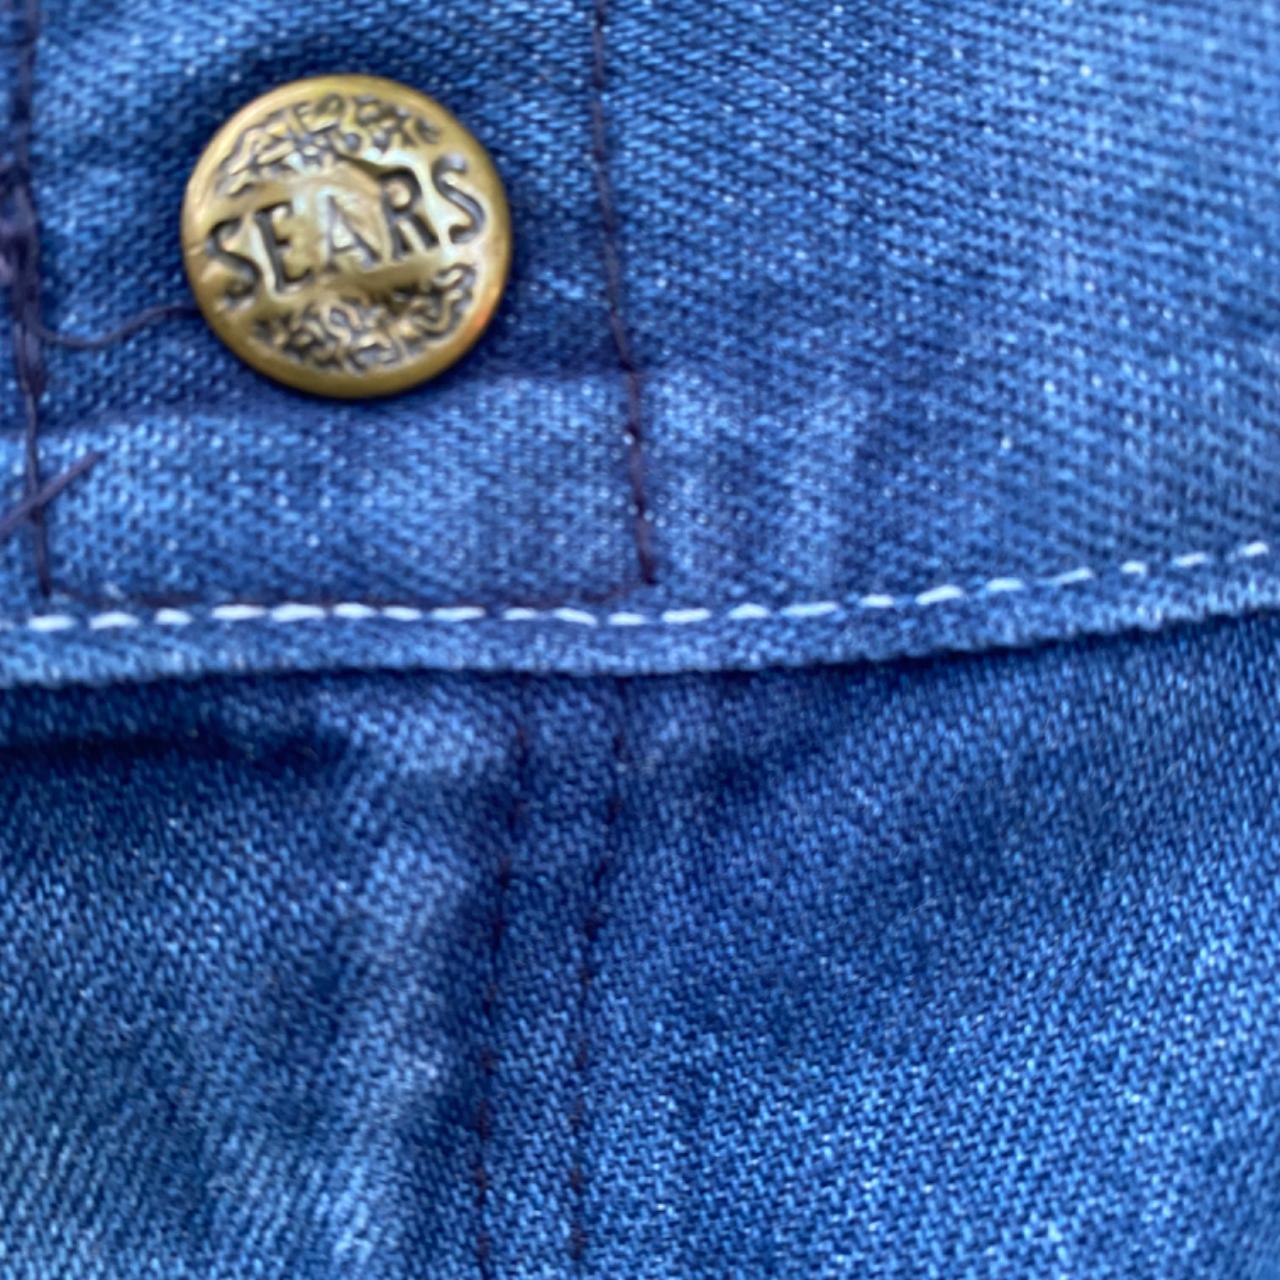 Sears vintage weartuff jeans, 40 X 30. 60's or 70's... - Depop